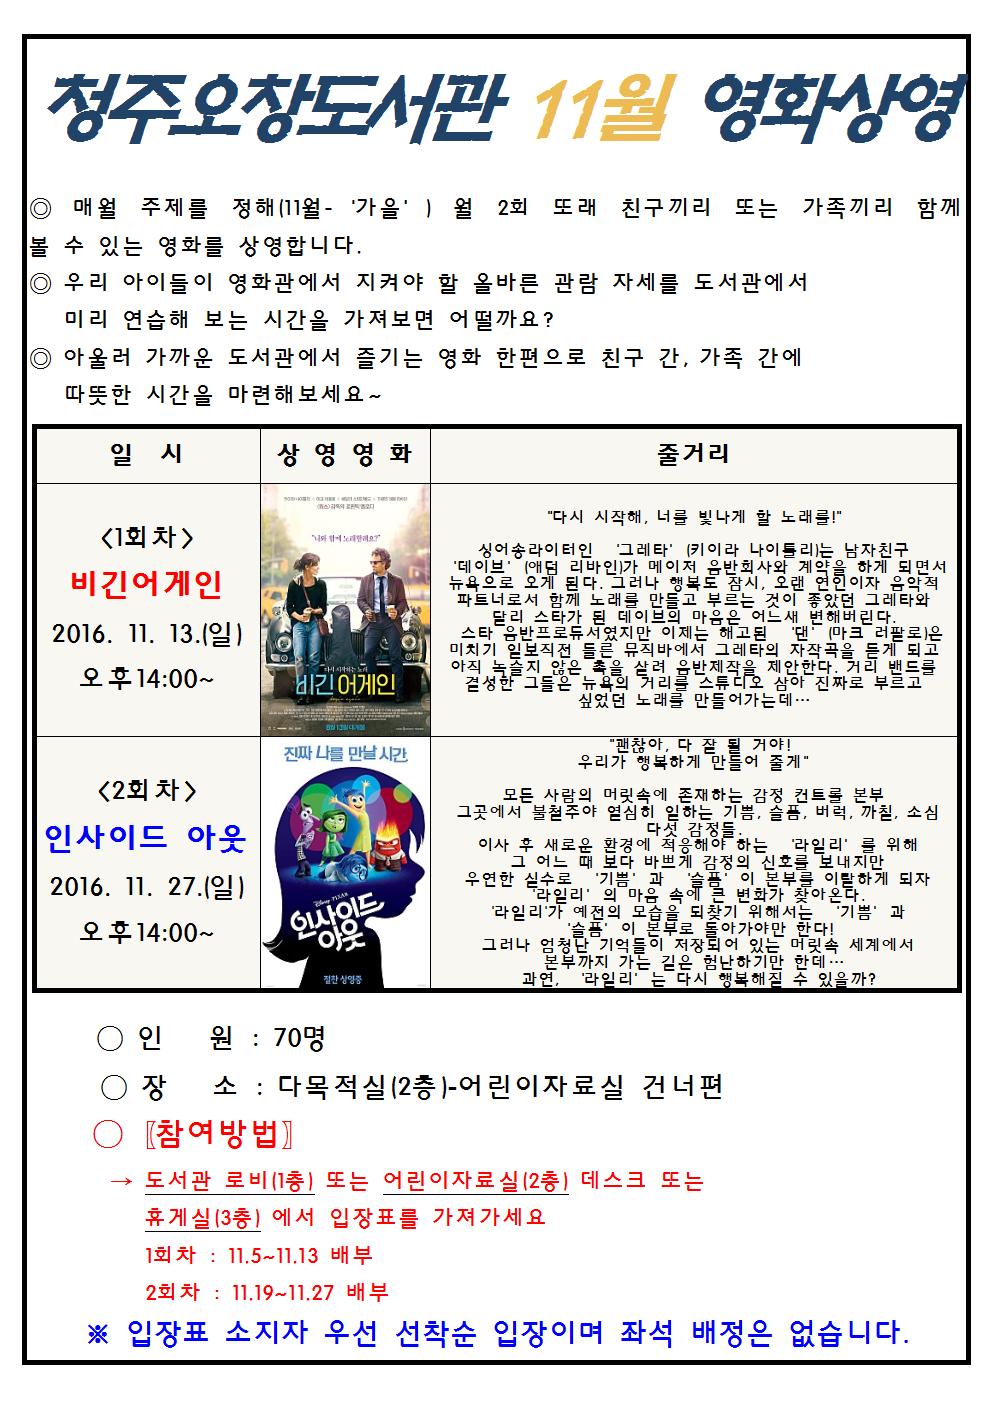 청주오창도서관 2016년 11월 영화상영 일정 및 내용